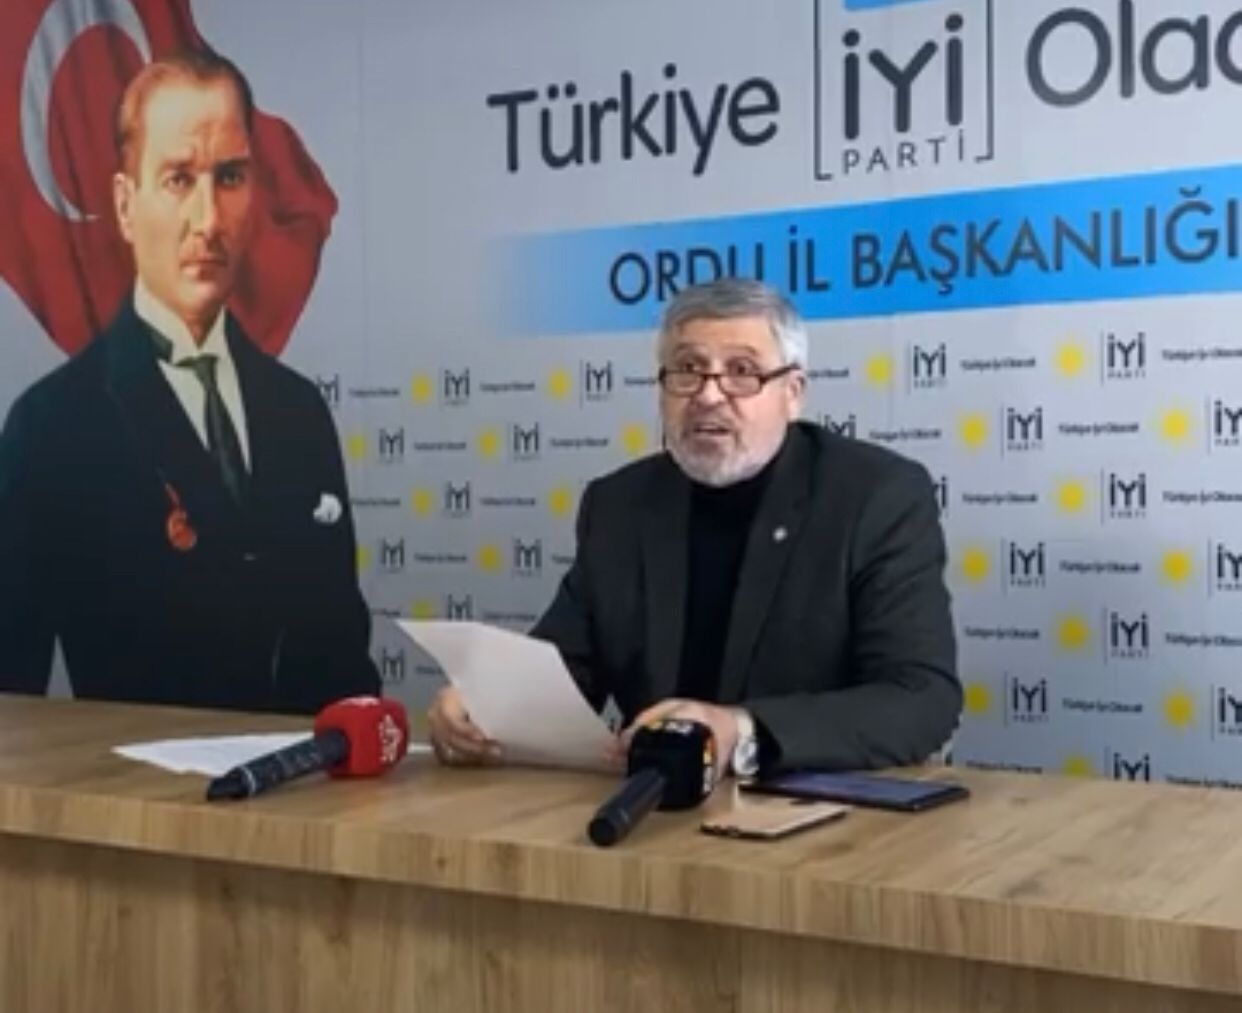 İYİ Parti Ordu İl Başkanı Ekrem Şentürk, ülke ekonomisiyle ilgili iktidarı eleştiren açıklamada bulundu. Başkan Şentürk:" Halk Erdoğan krizini unutmayacak, sandıkta hesap soracak."dedi. - iyi ordu baskan